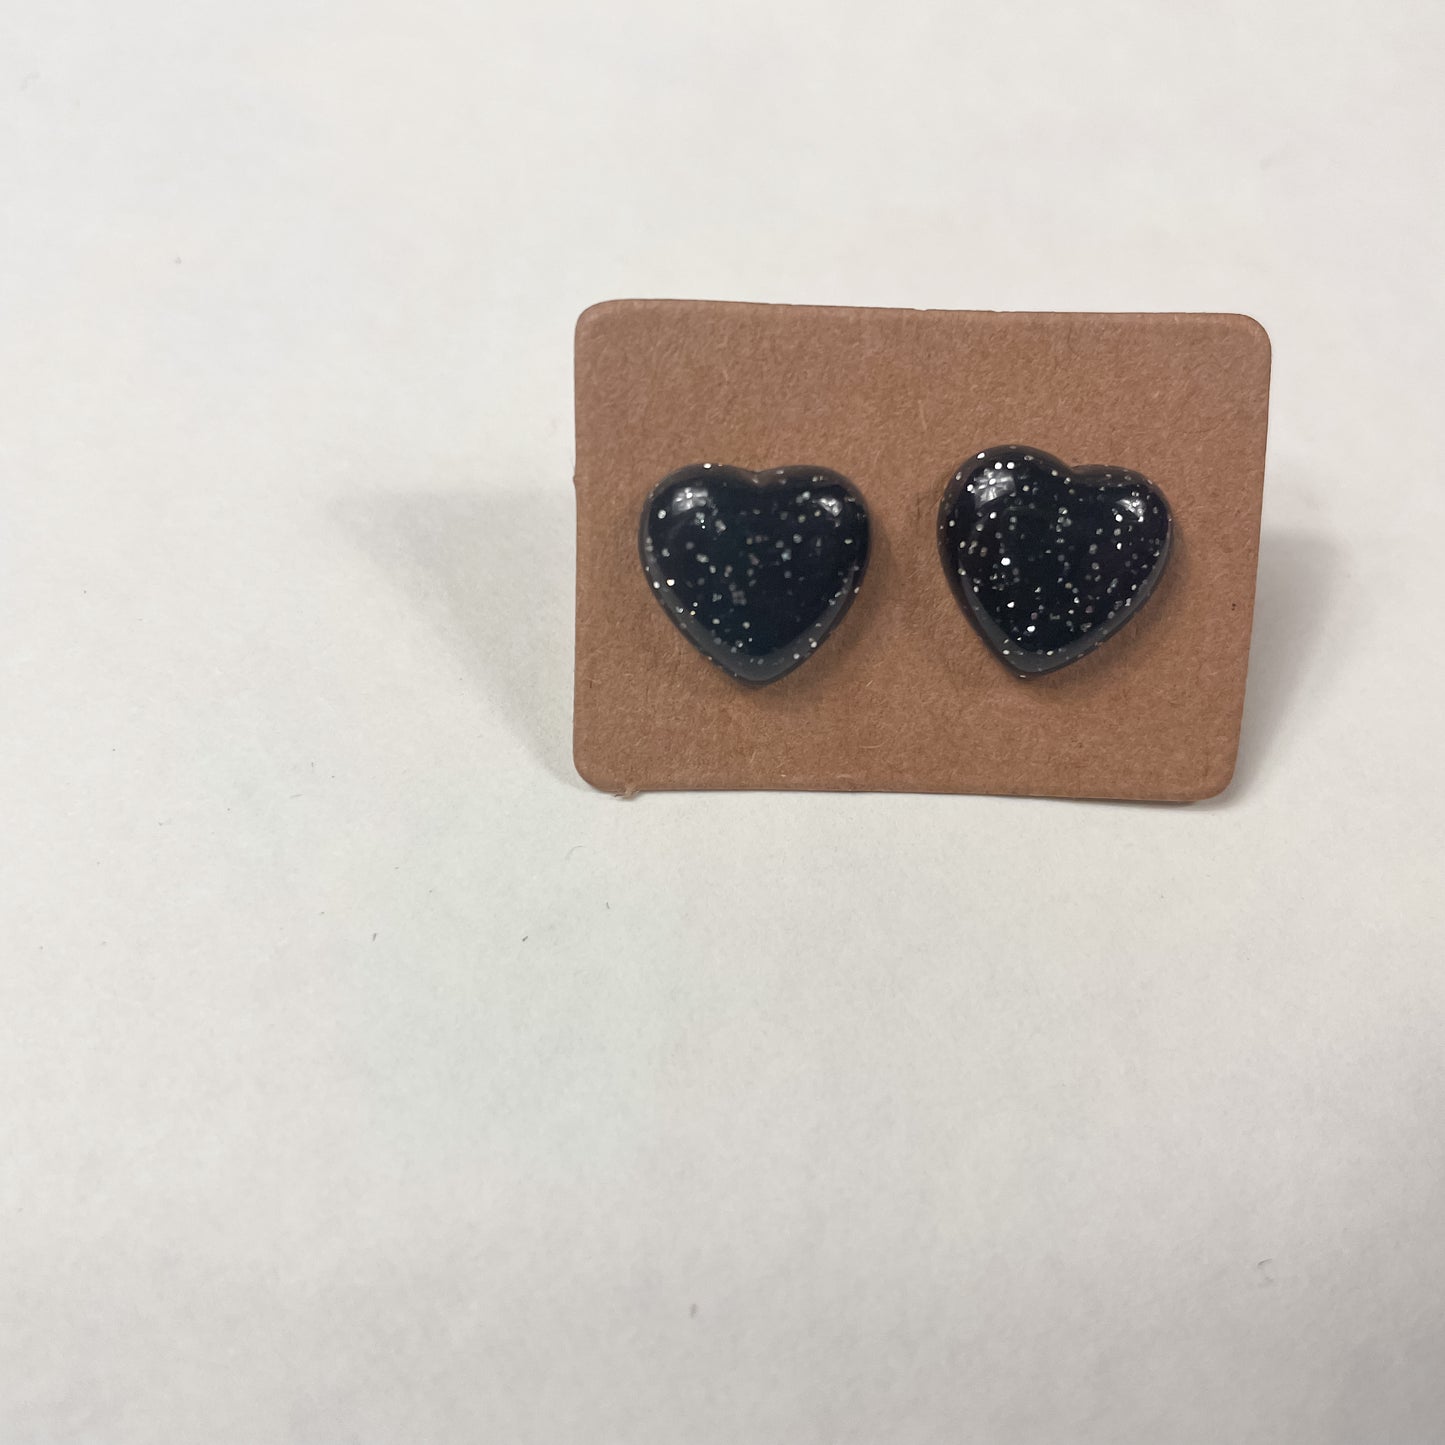 Black with Silver Glitter Amoris Style Earrings | Heart Shaped Stud Earrings